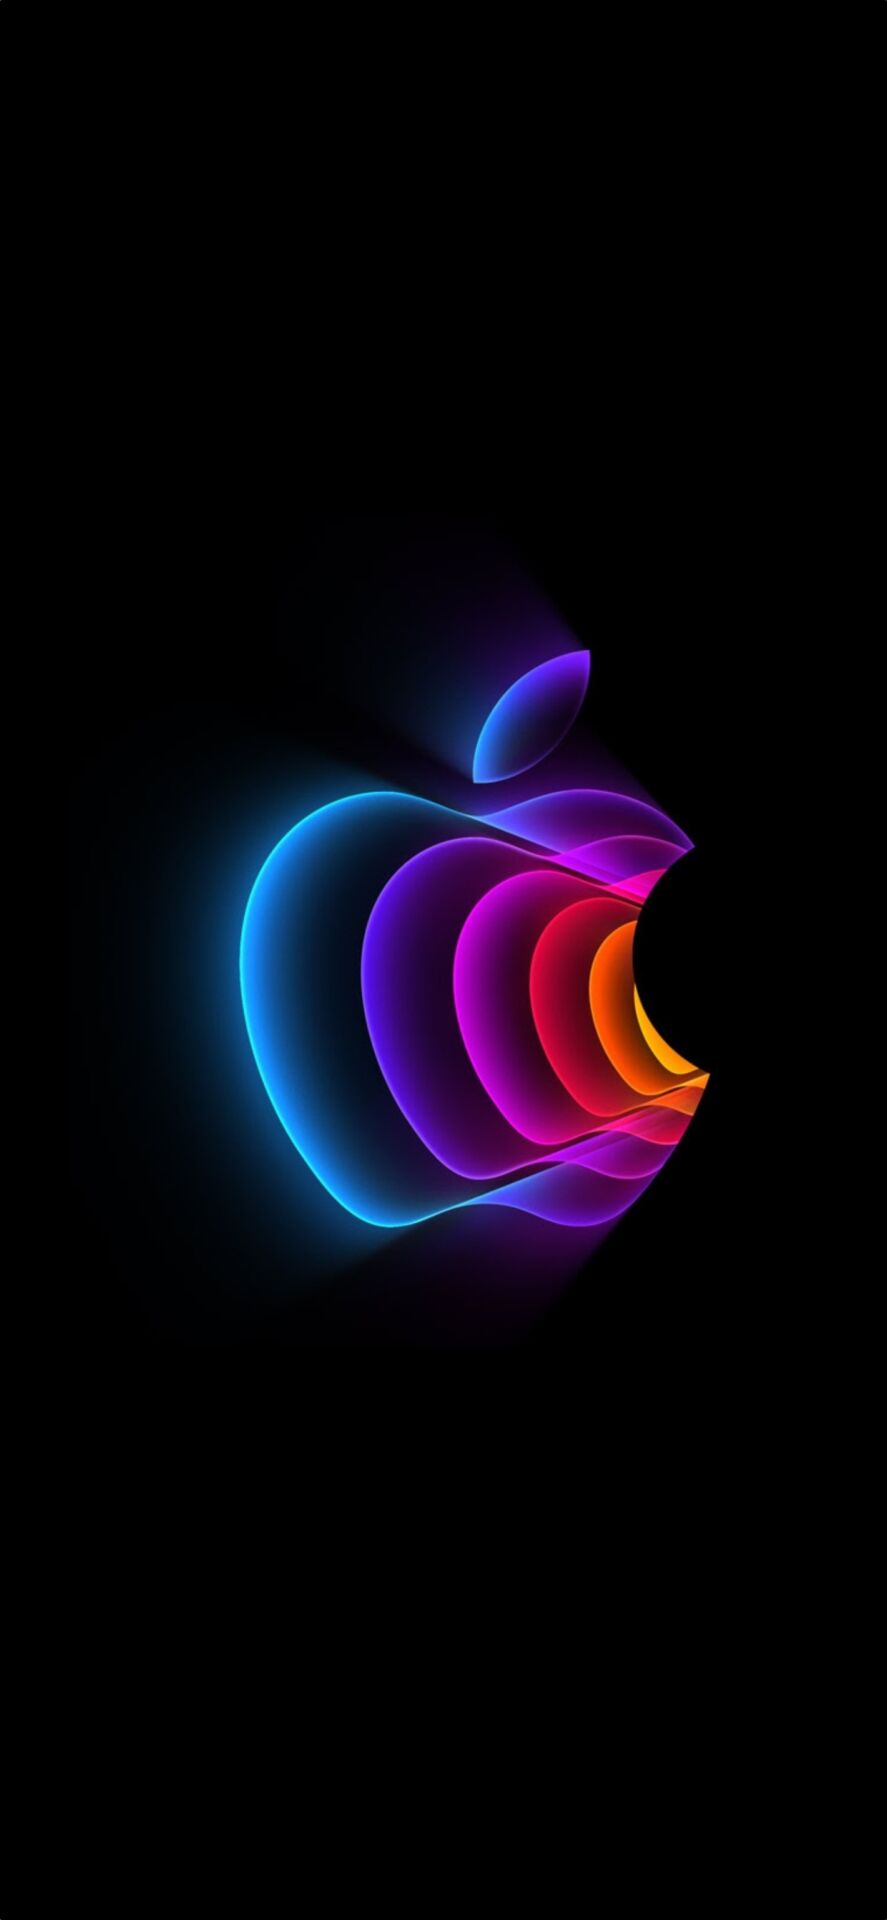 Descargue Peek Performance Wallpaper con el logotipo de Apple para iPhone, iPad y Mac